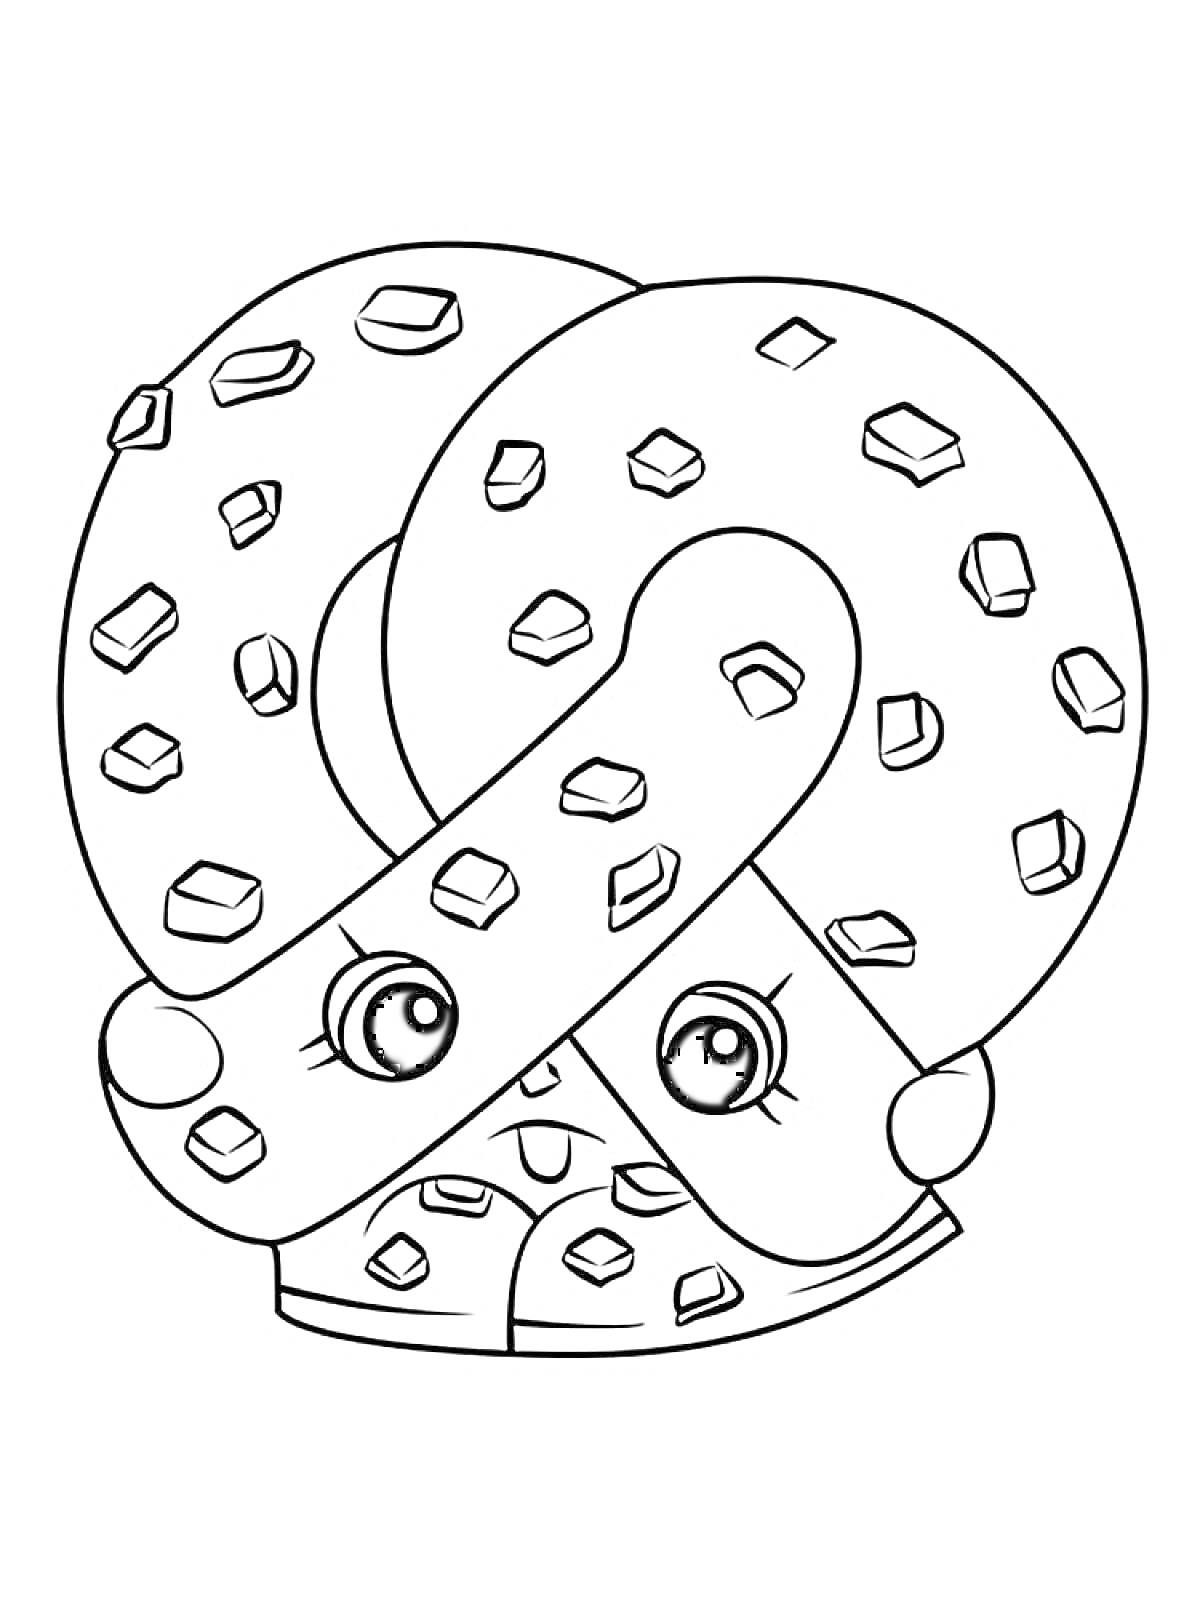 Раскраска Пряник в форме кренделя с глазами и бровями, украшенный квадратными кусочками